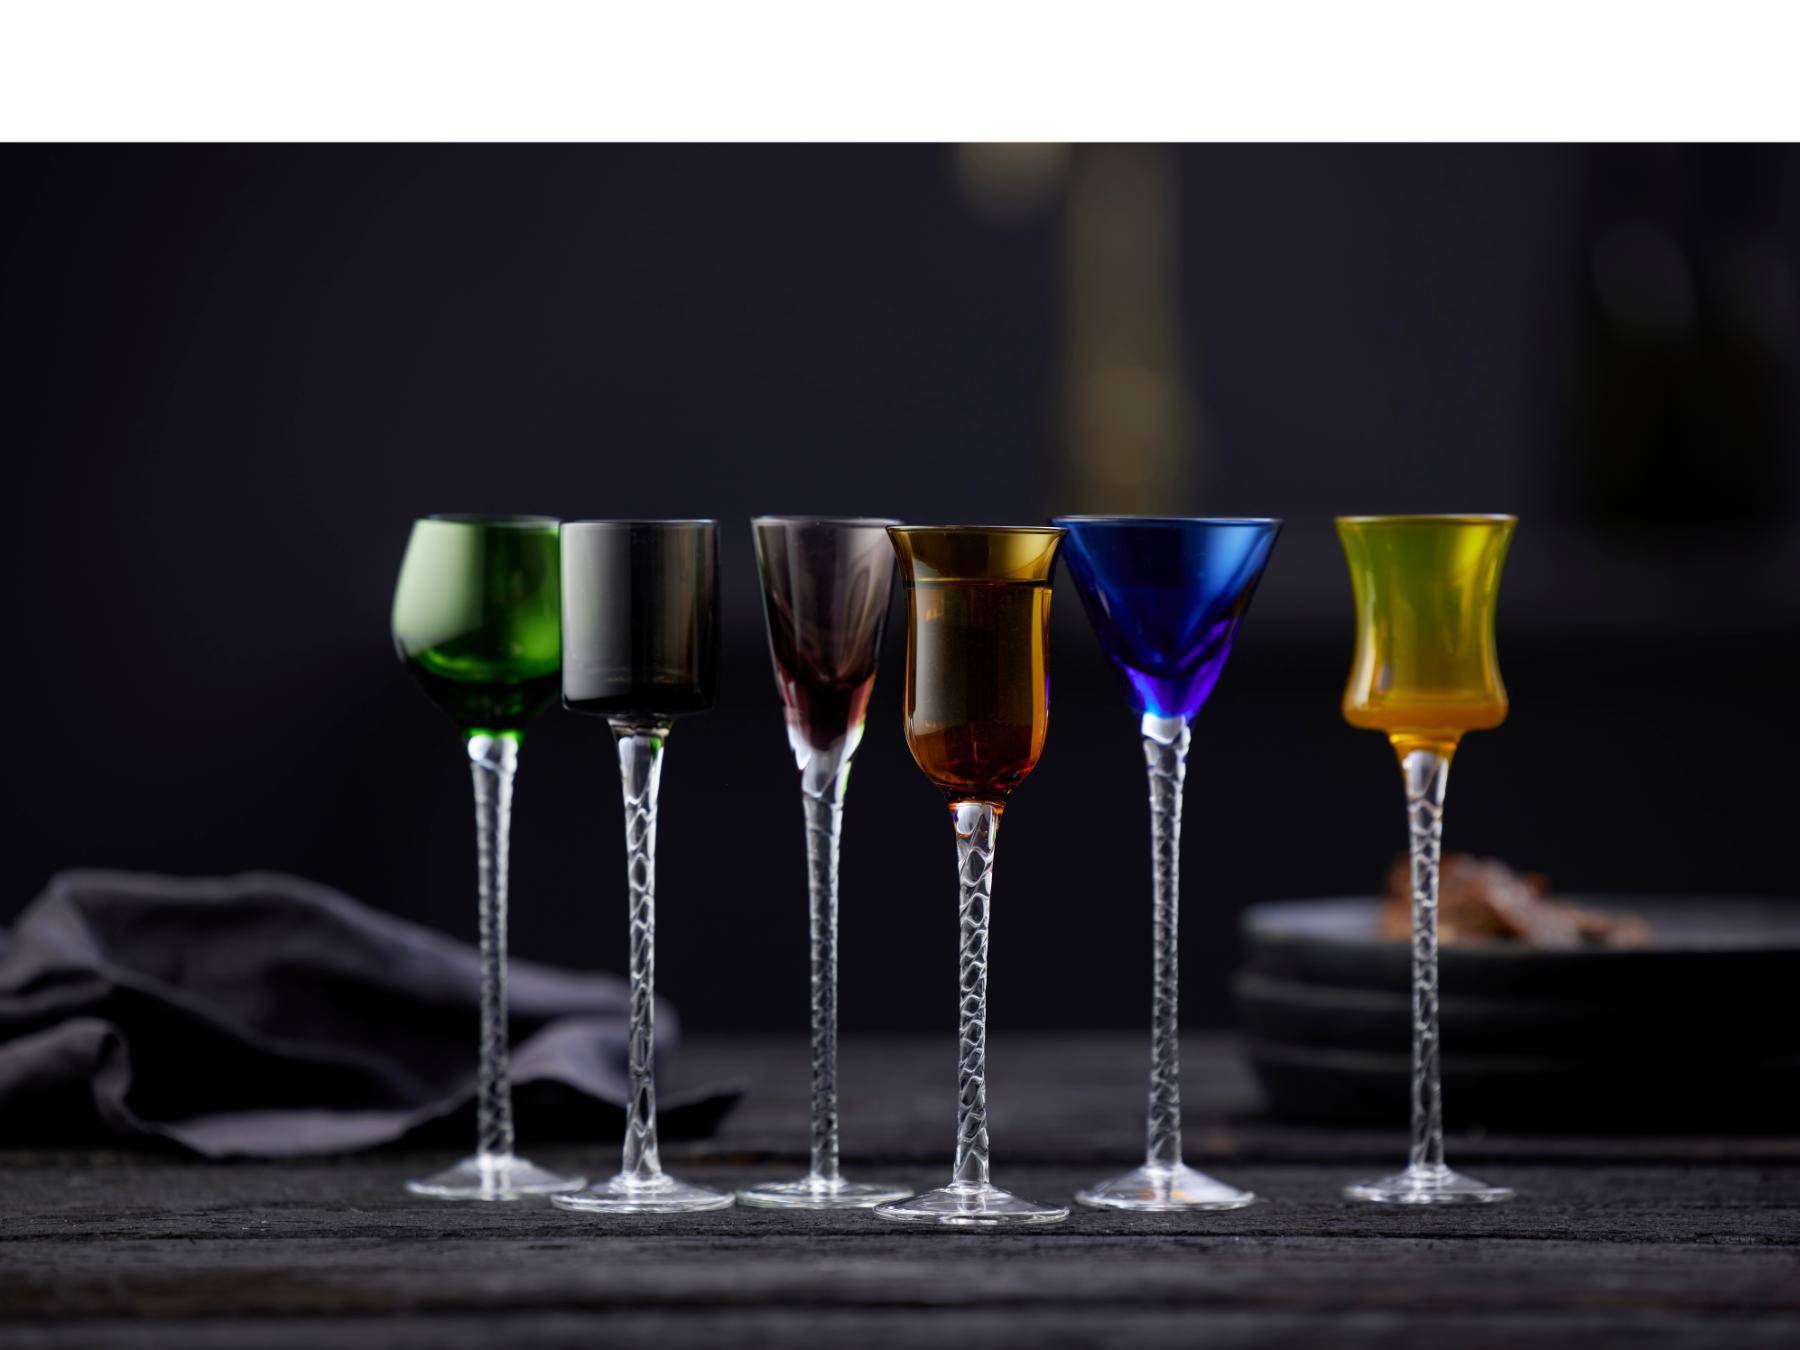 Lyngby Aquavit / borrel / schnaps glas London 18 cm hoog - 5 cl - set van 6 stuks - colour mix - Accessoire Loods